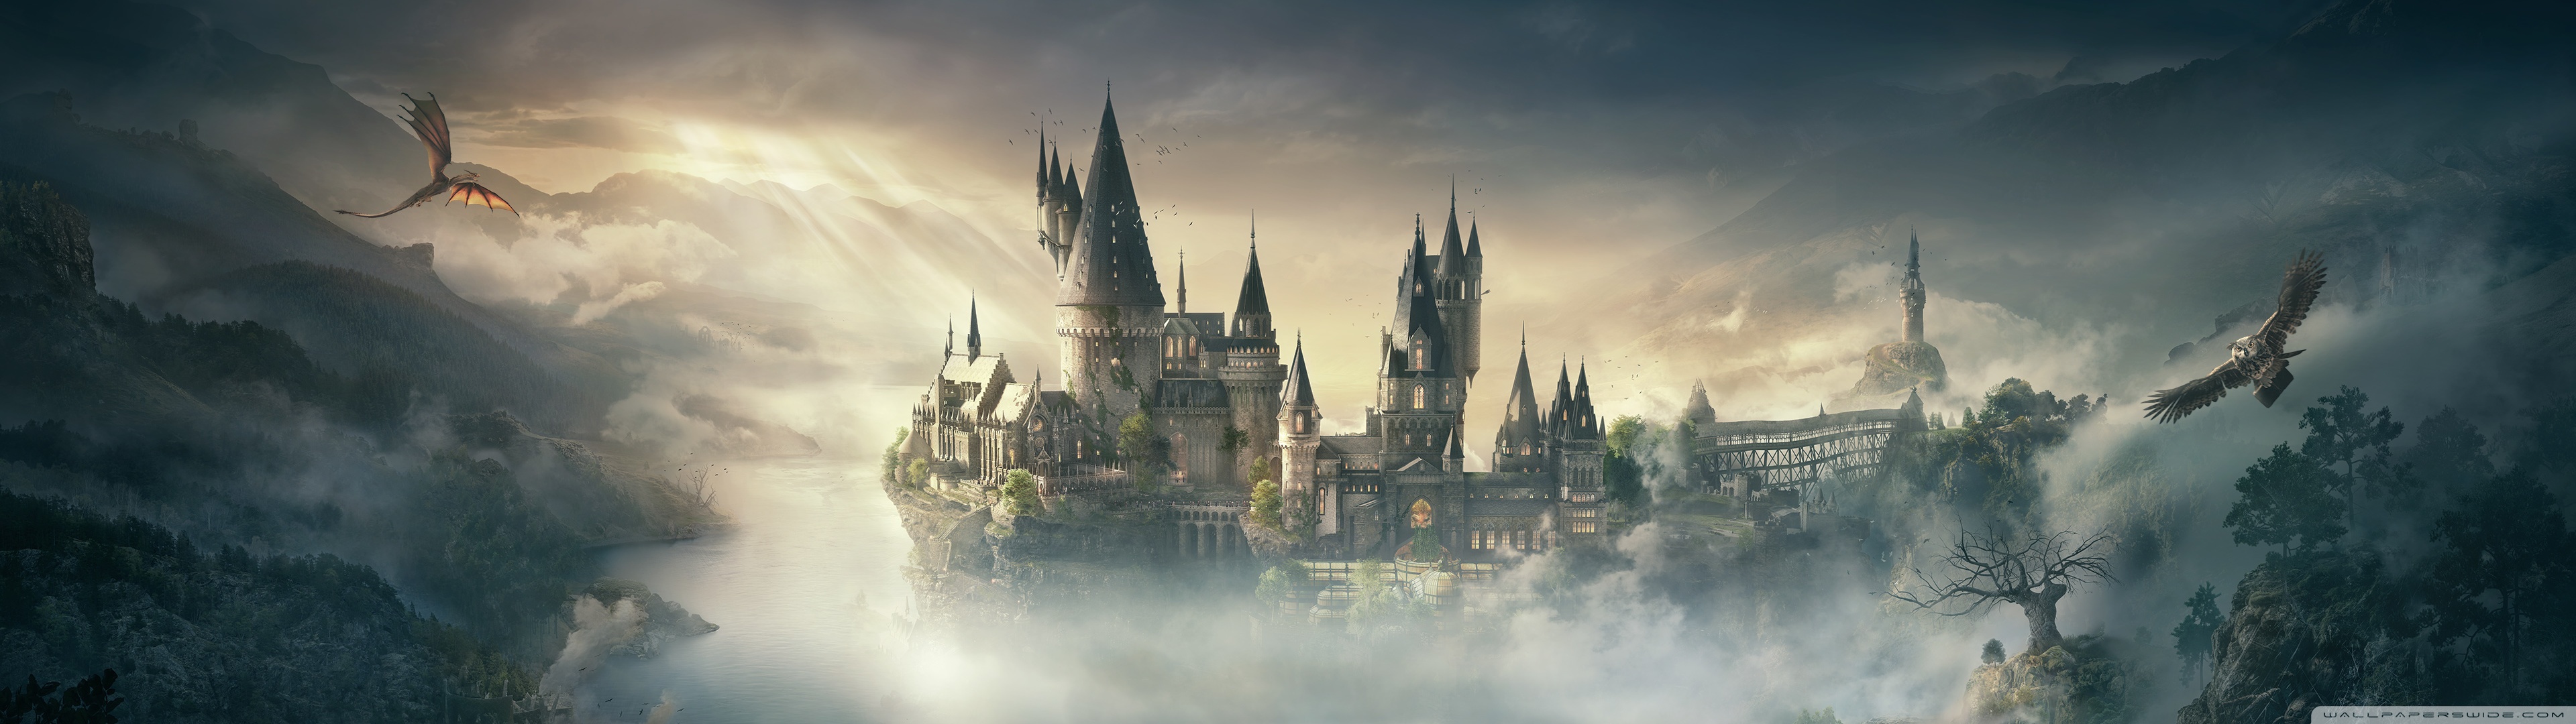 Hình nền Harry Potter Dual miễn phí - Bạn là fan của Harry Potter và đang tìm kiếm một hình nền đúng chất của phù thủy nổi tiếng này? Hãy xem ngay Hình nền Harry Potter Dual miễn phí để được khám phá chi tiết cuộc phiêu lưu của Harry cùng các nhân vật yêu thích.